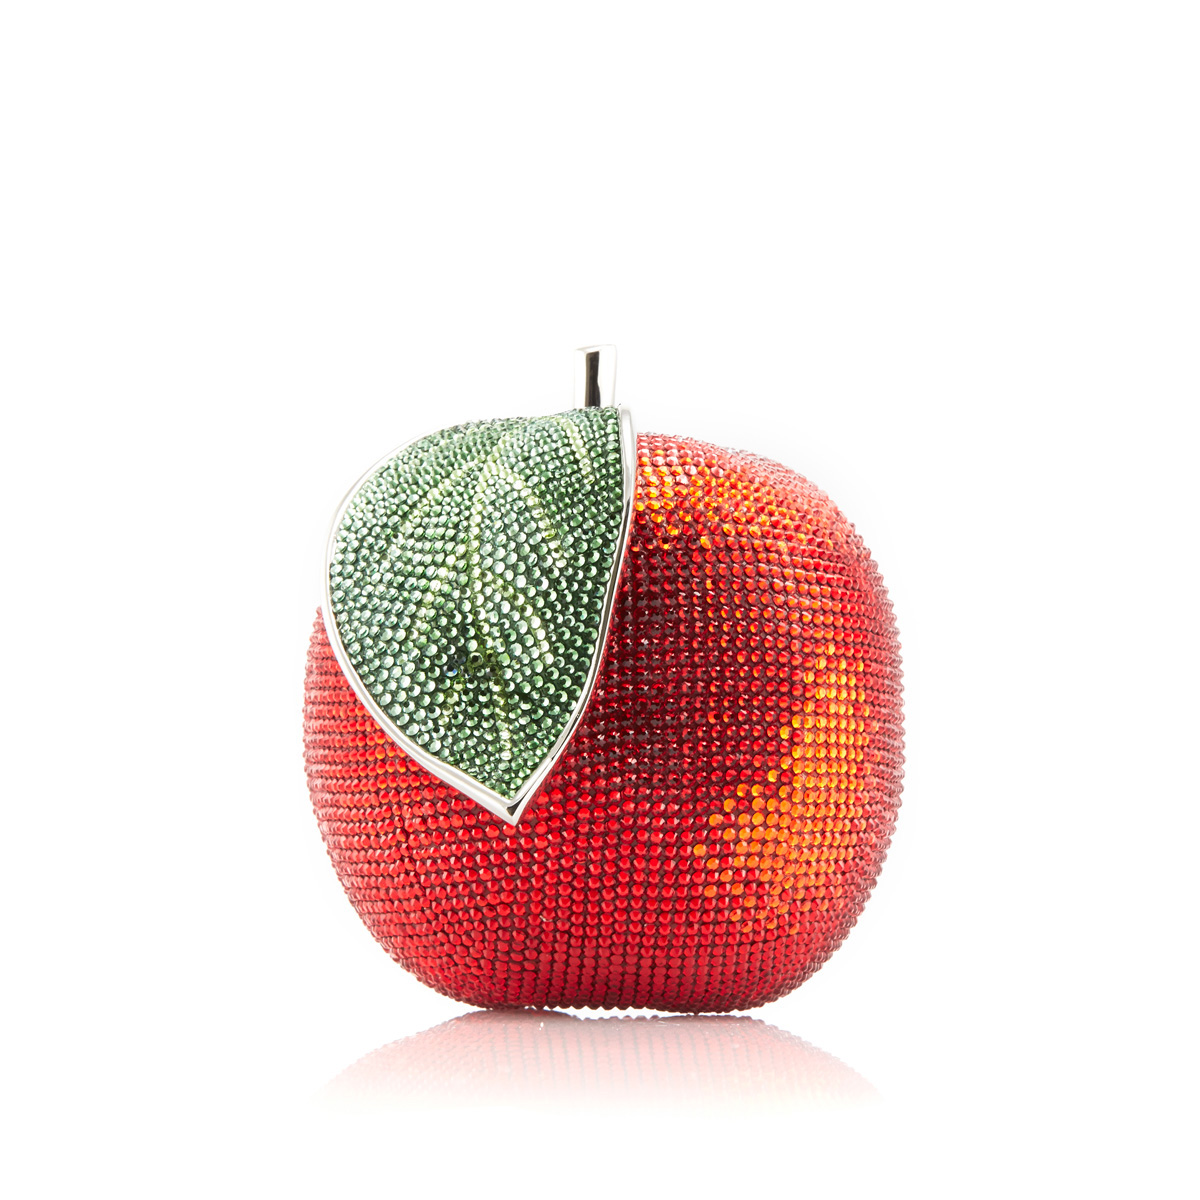 ‘백설공주’에 등장하는 사과 모양을 본 딴 주디스 리버의 미노디에르 클러치, 2013 가을 컬렉션. 